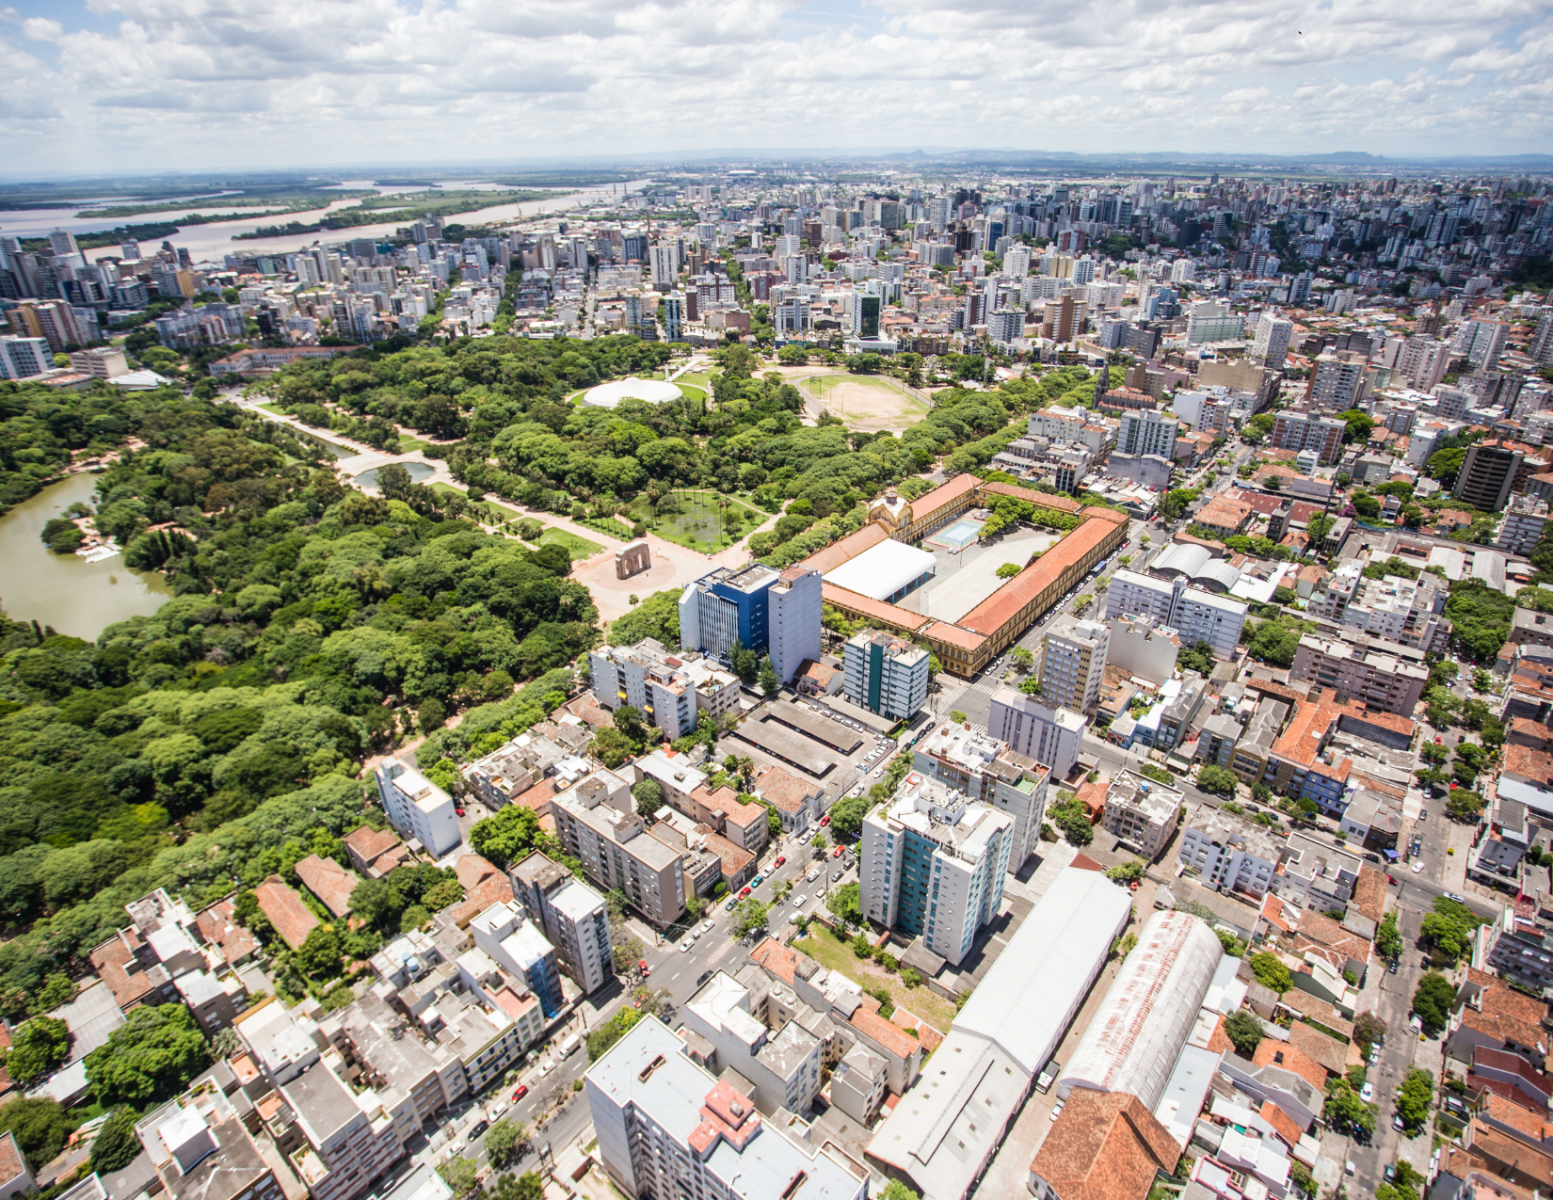 Skyline of a city in Brazil.